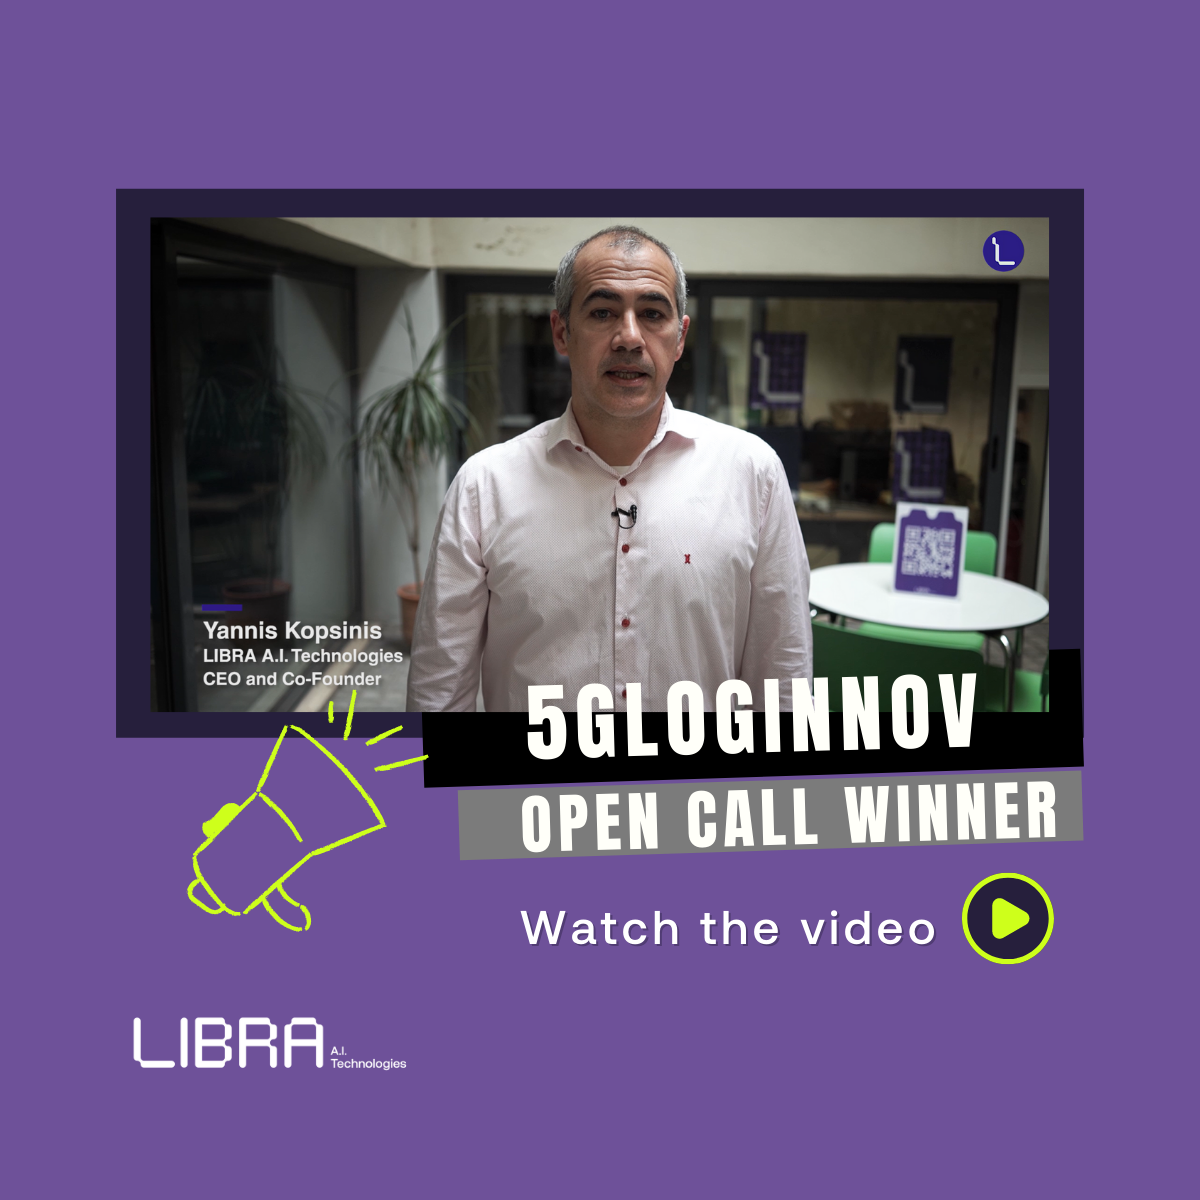 LIBRA participates in the 5GLOGINNOV project